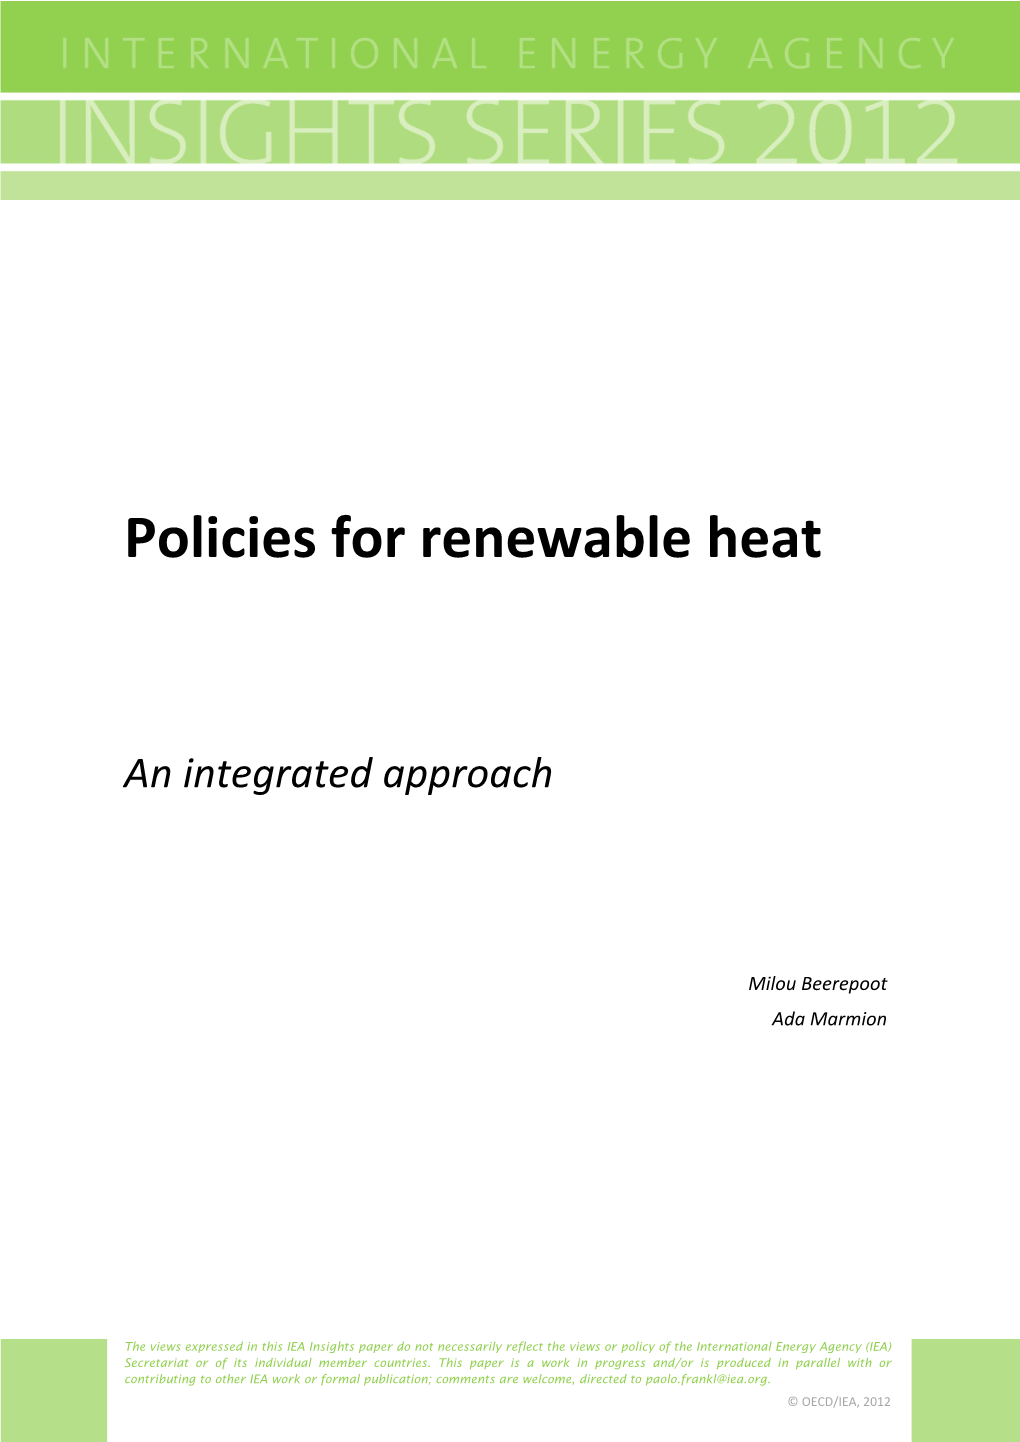 Policies for Renewable Heat